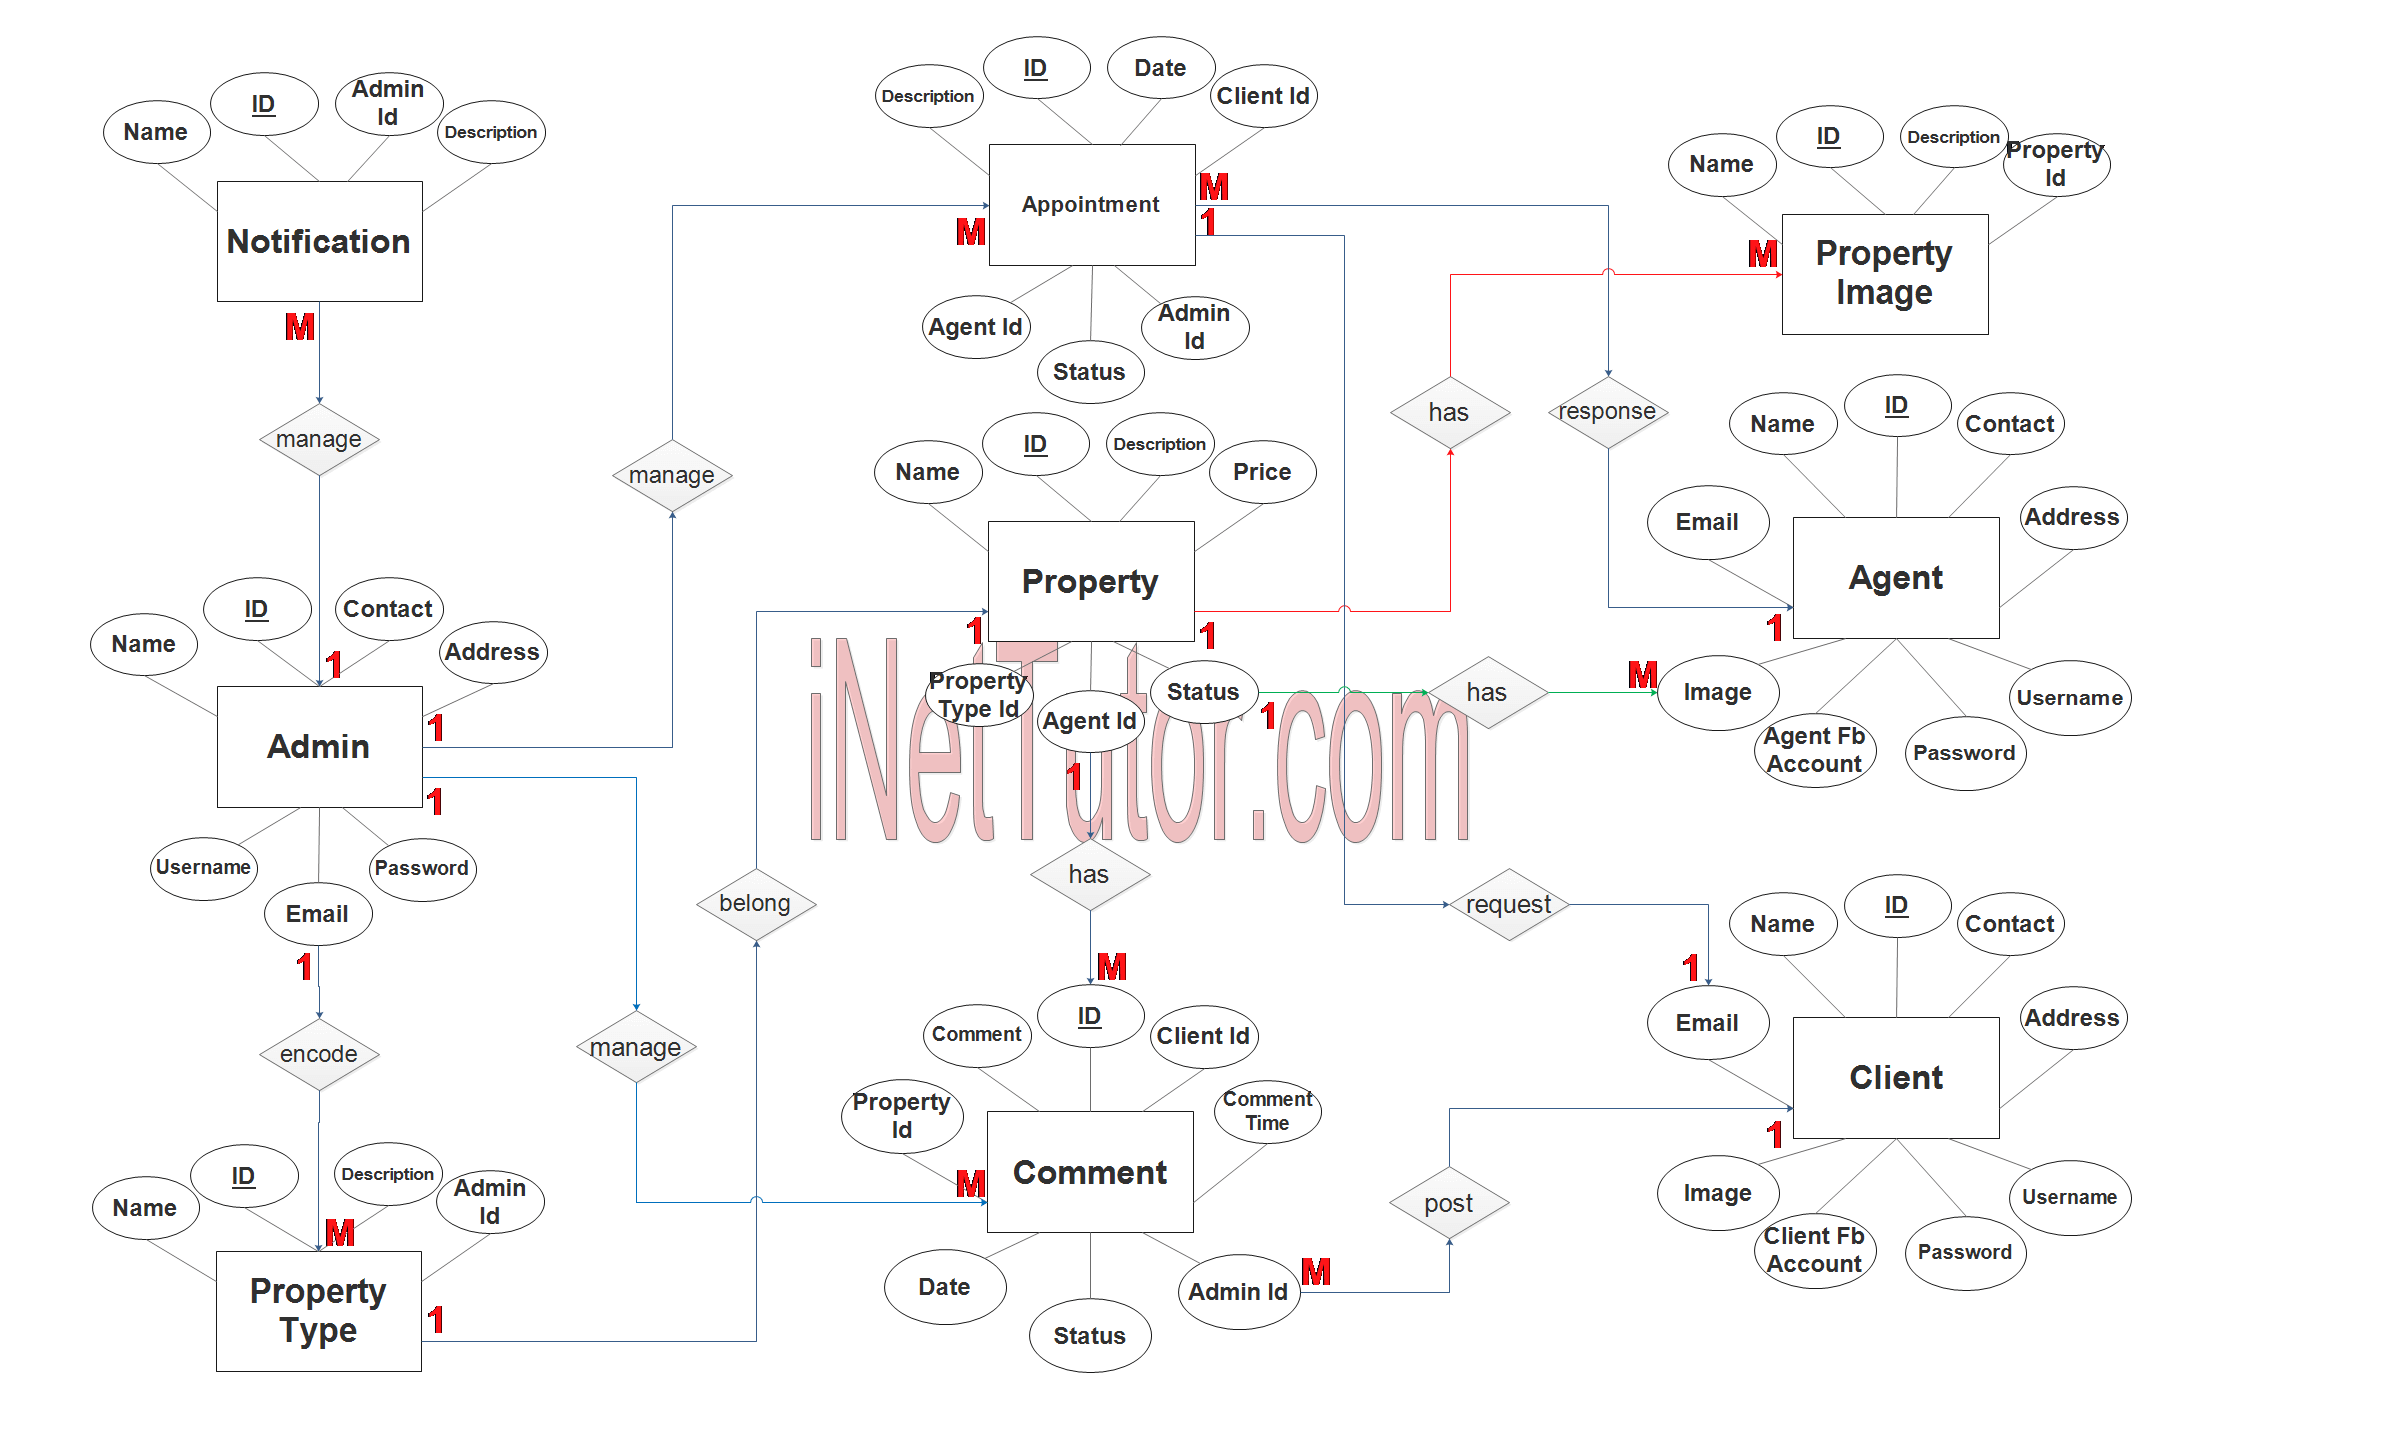 Real Estate Management System ER Diagram Step 3 Complete 